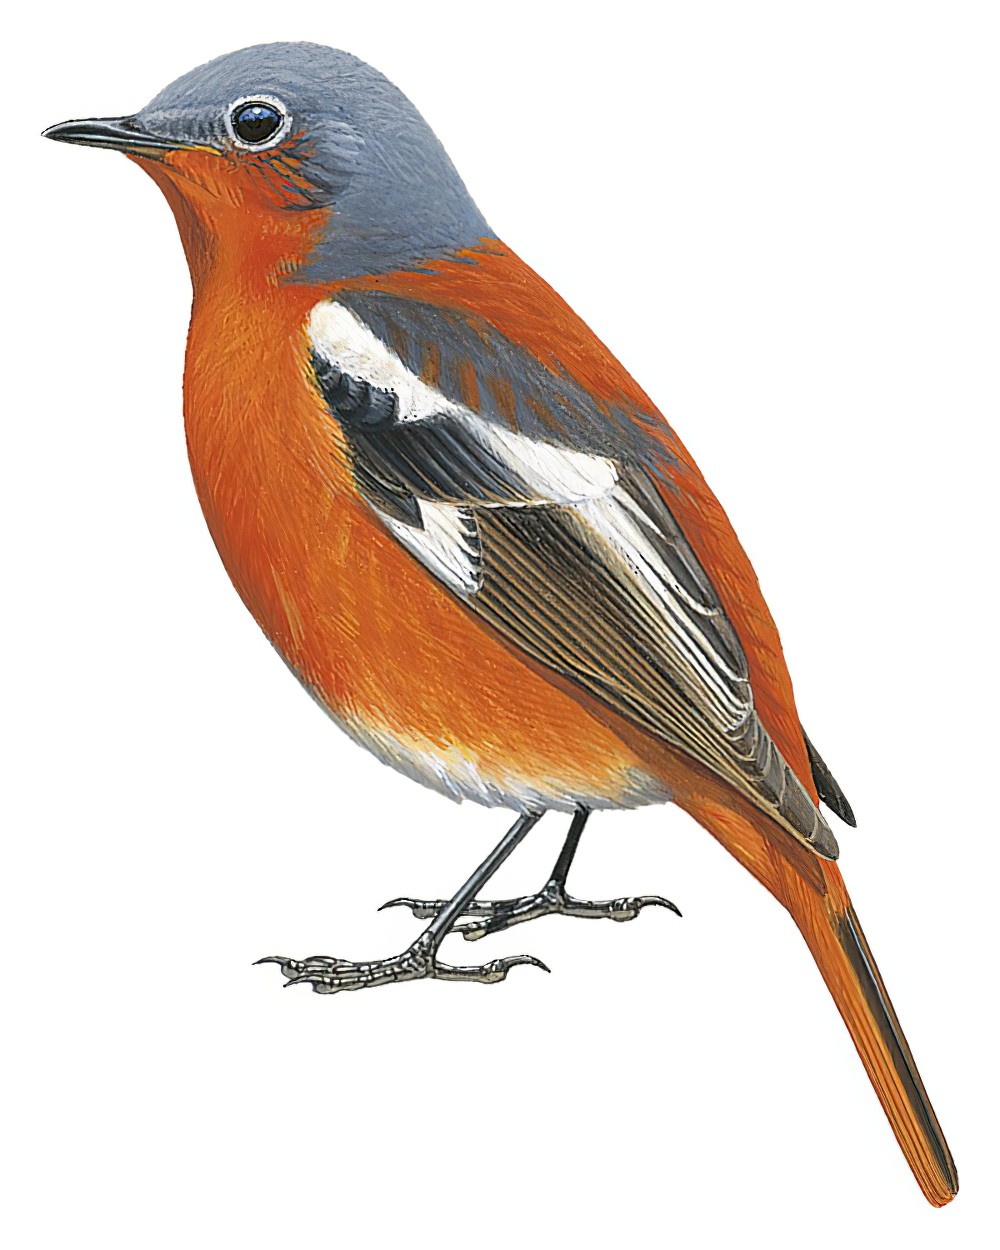 Ala Shan Redstart / Phoenicurus alaschanicus